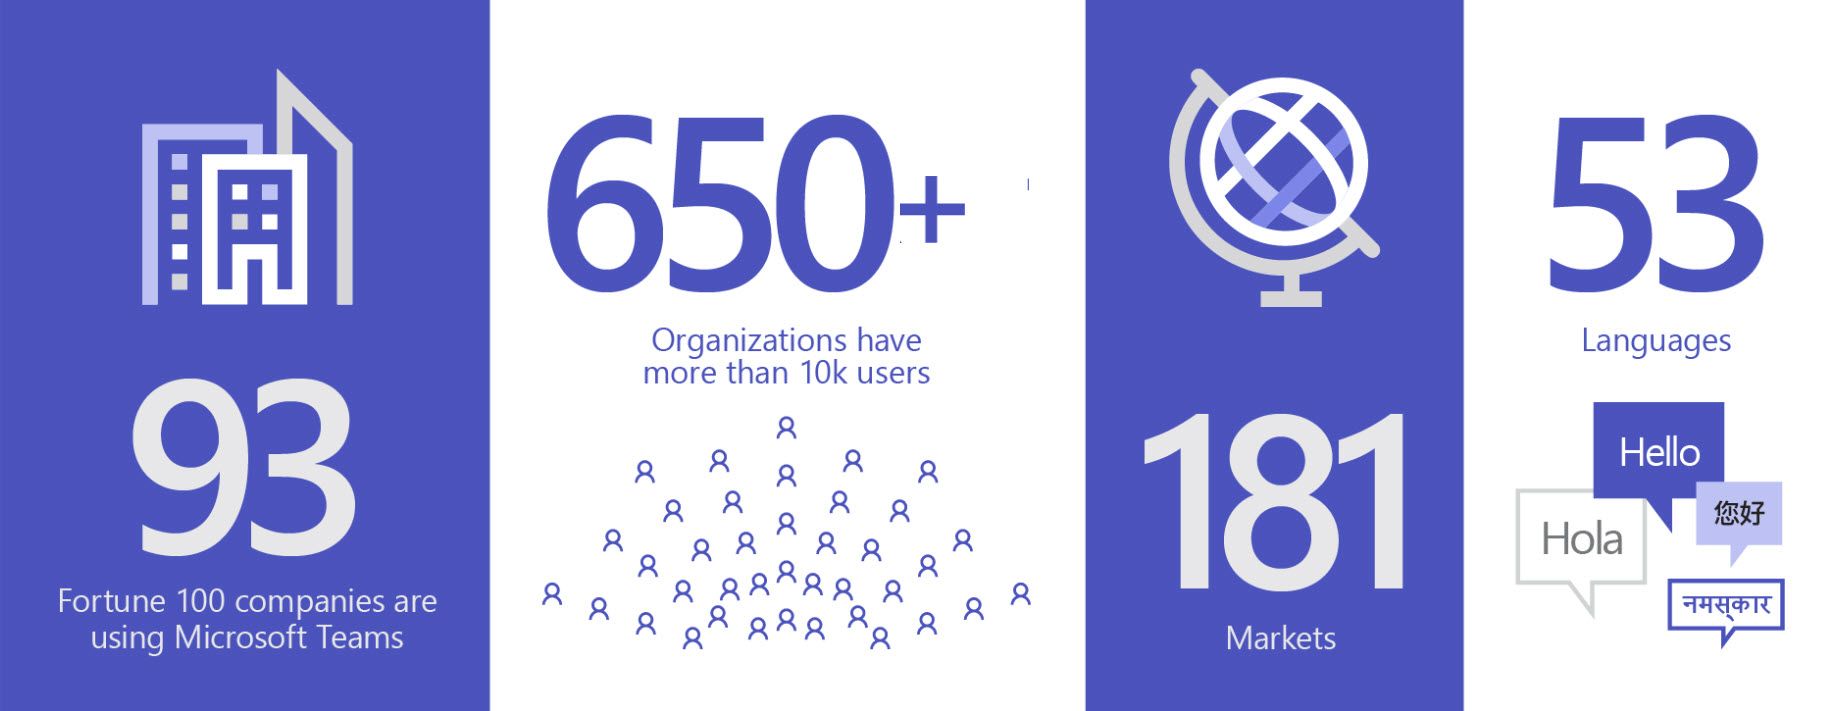 Immagine che mostra 93 registrati che hanno squadre, oltre 650 registrati hanno oltre 10.000 utenti, in 181 mercati e 53 lingue.